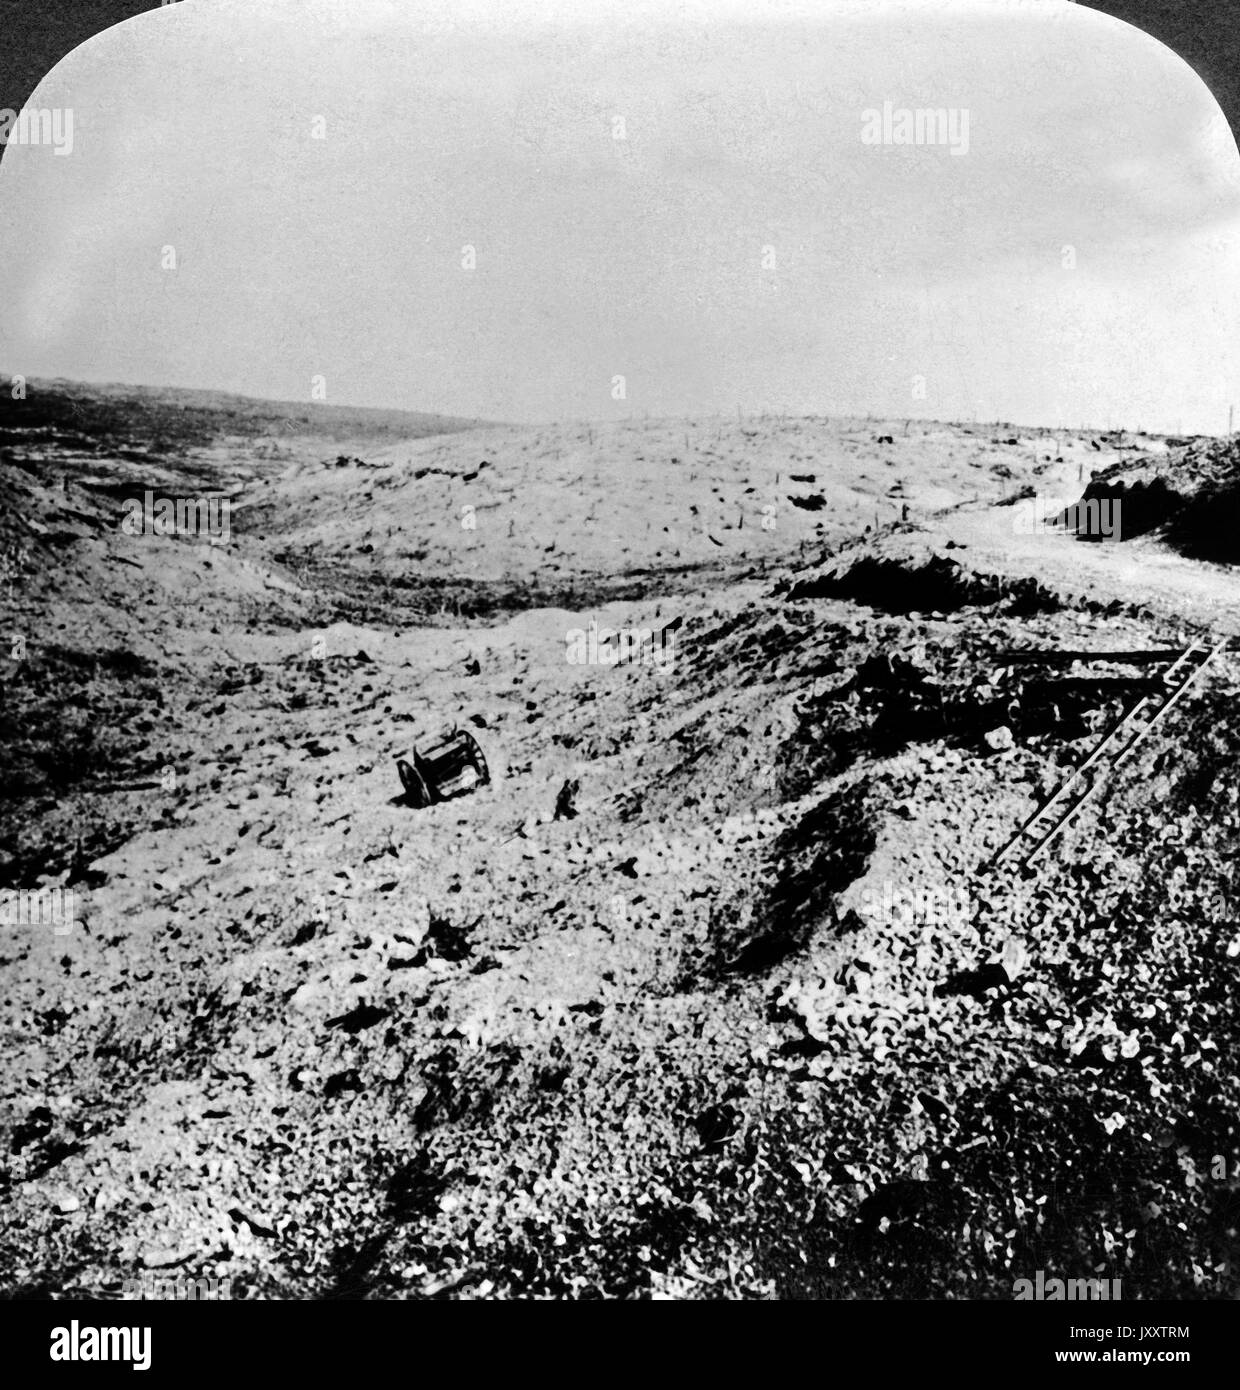 Einst grünende Hügel, jetzt eine Verschwendung desolata - ein Schlachtfeld in Frankreich, 1917. Una volta verdeggianti colline realizzata una desolazione, un campo di battaglia in Francia, 1917. Foto Stock